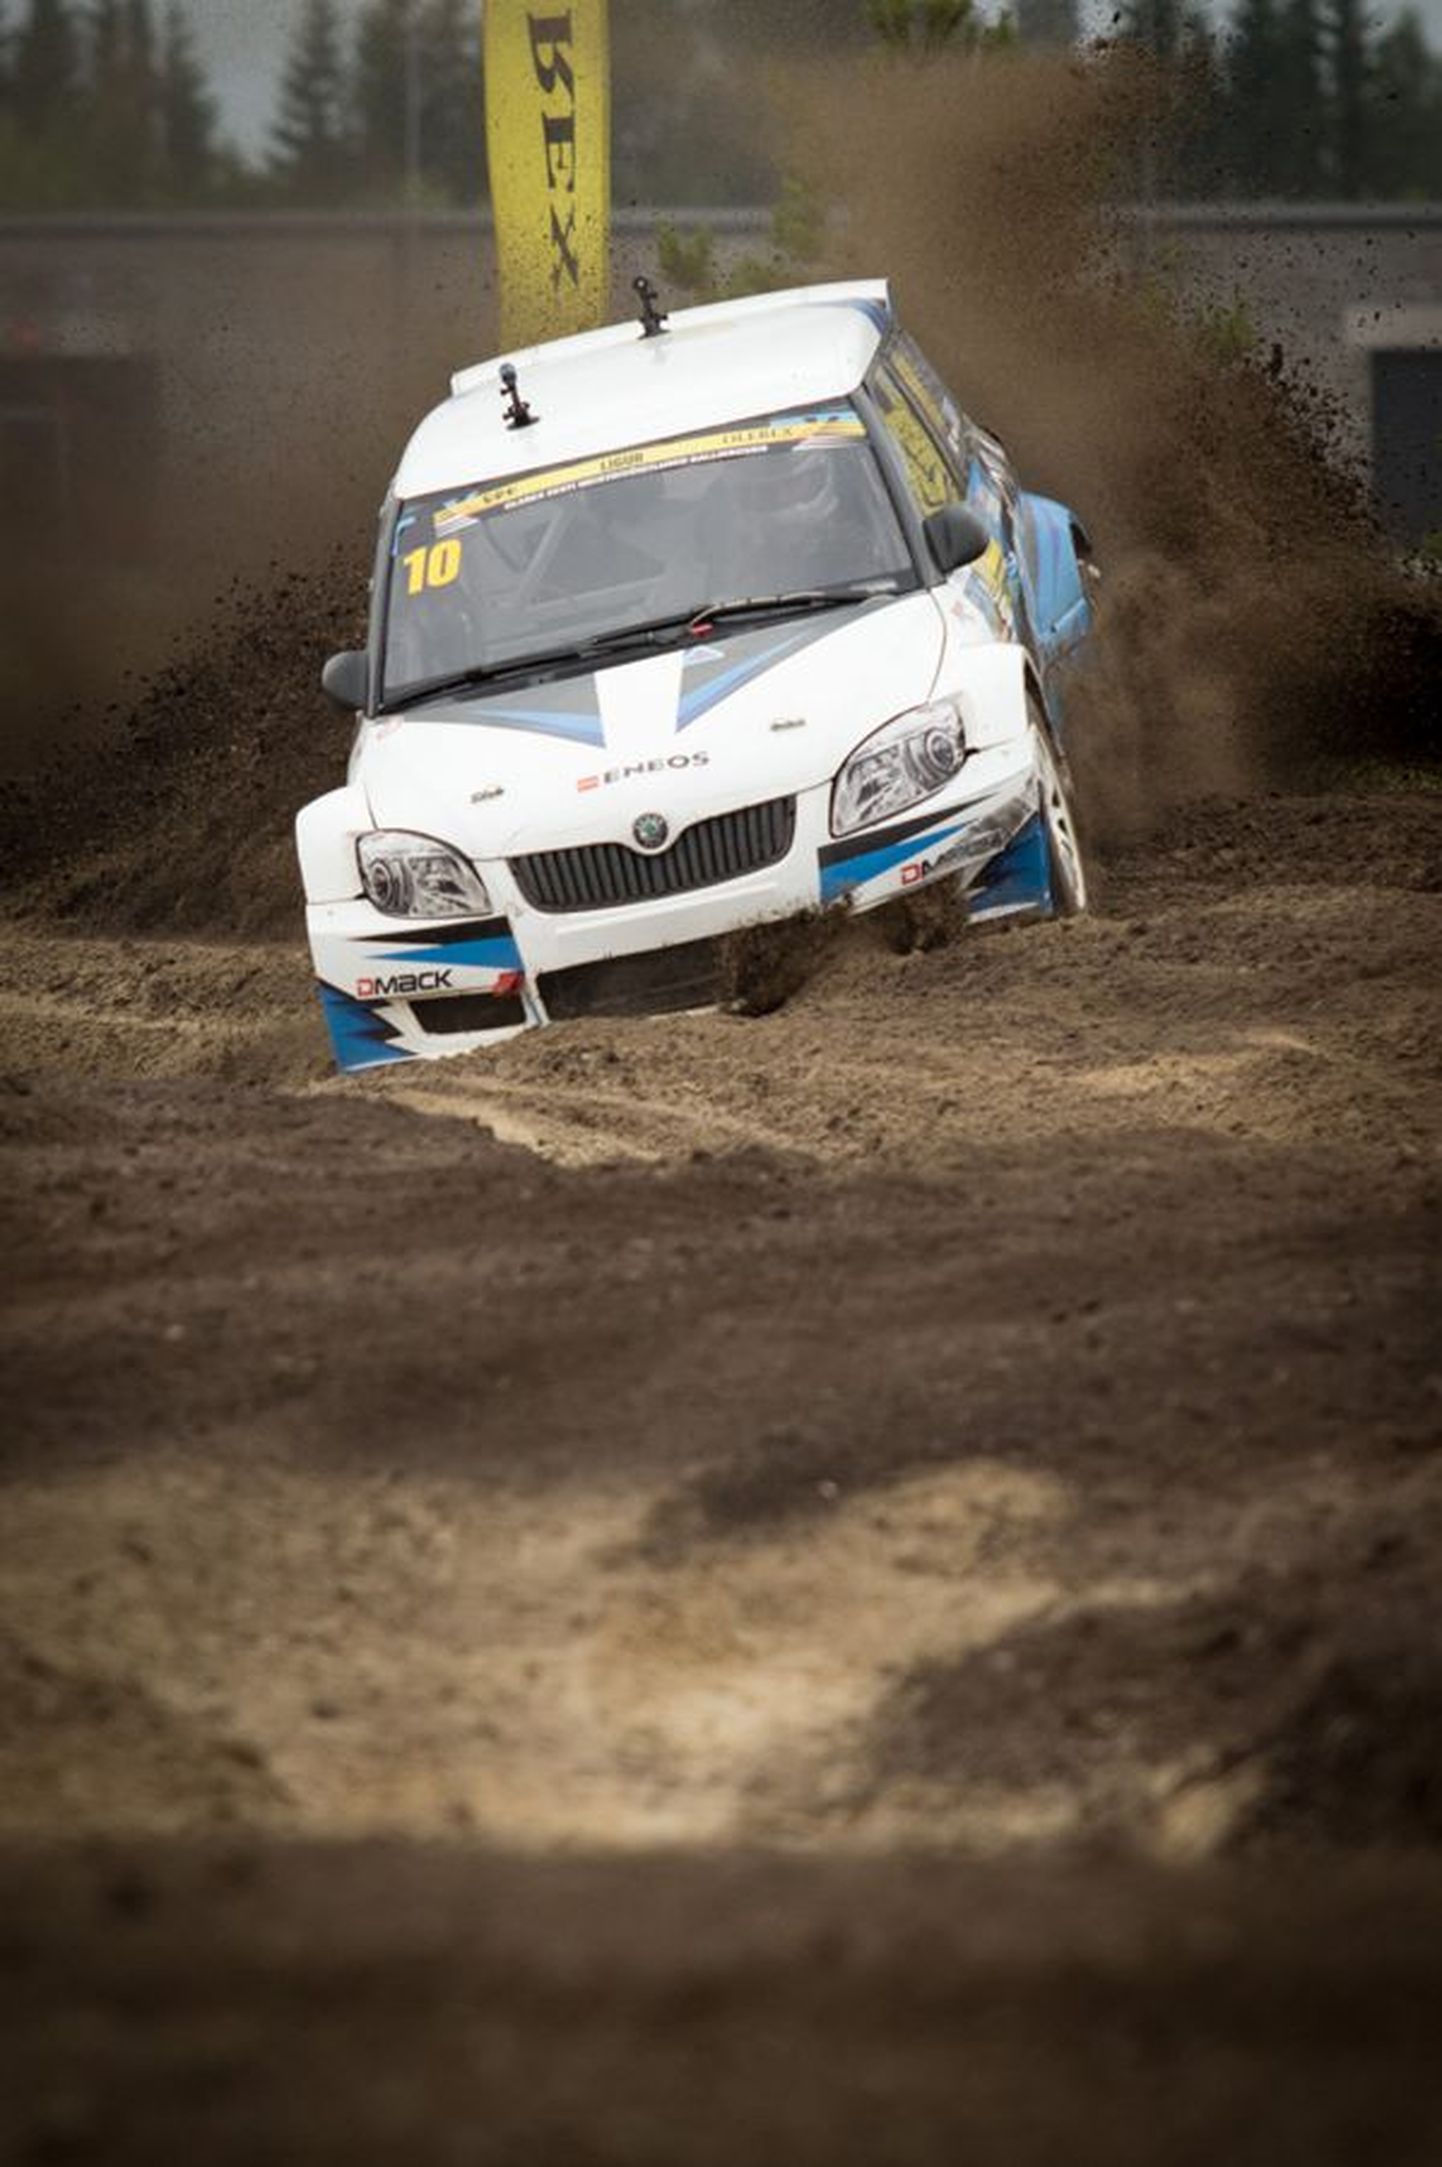 Karksi valla autosportlane Janno Ligur kindlustas laupäeval Pärnumaal Audru rajal peetud Eesti rallikrossimeistrivõistluste etapil selle sarja liidripositsiooni, tehes seal Super1600 klassis puhta töö.